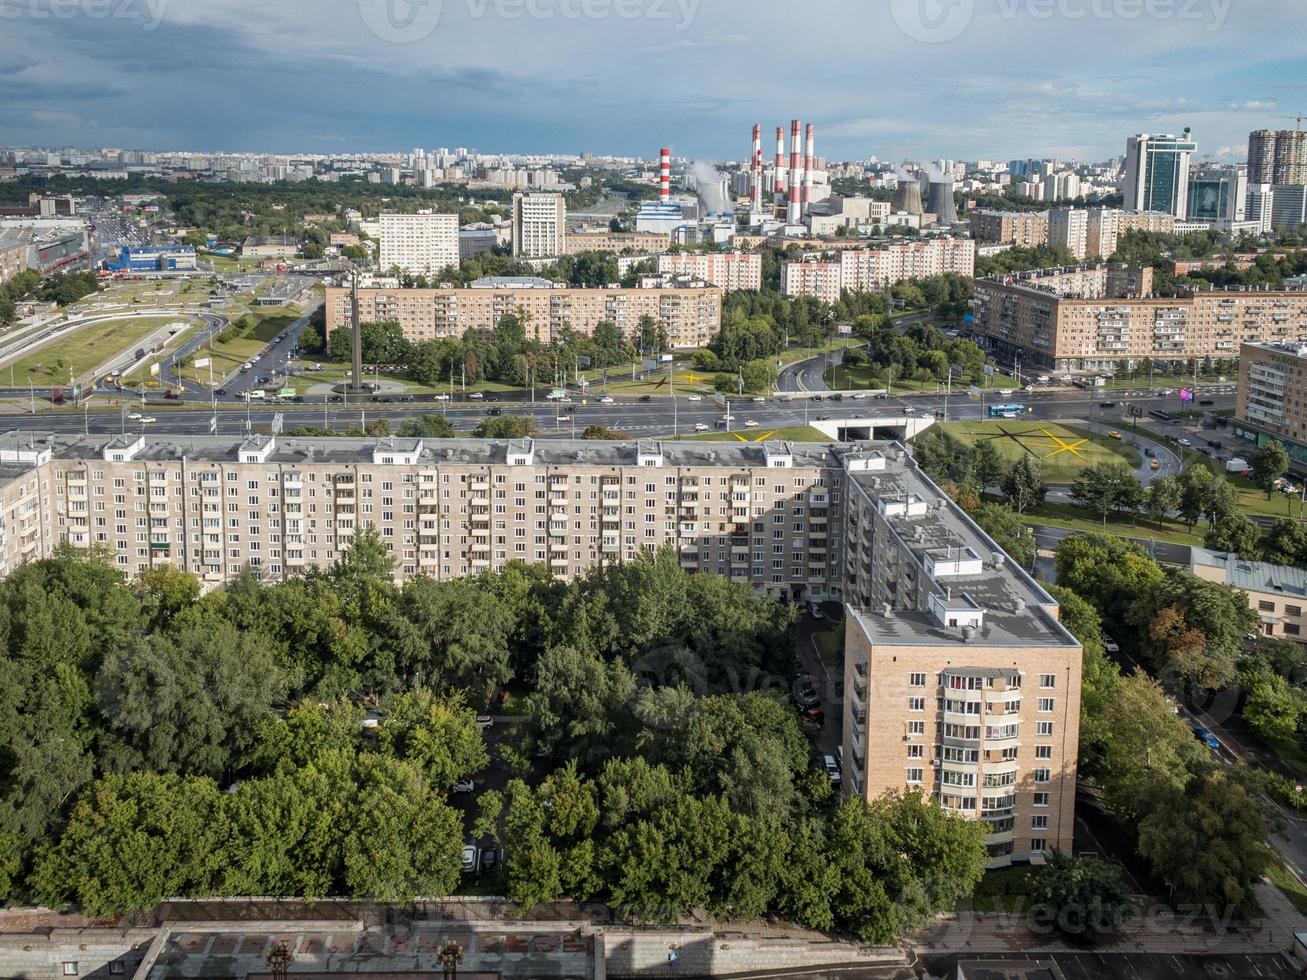 vista aérea del horizonte de la ciudad de moscú, rusia durante el día. foto